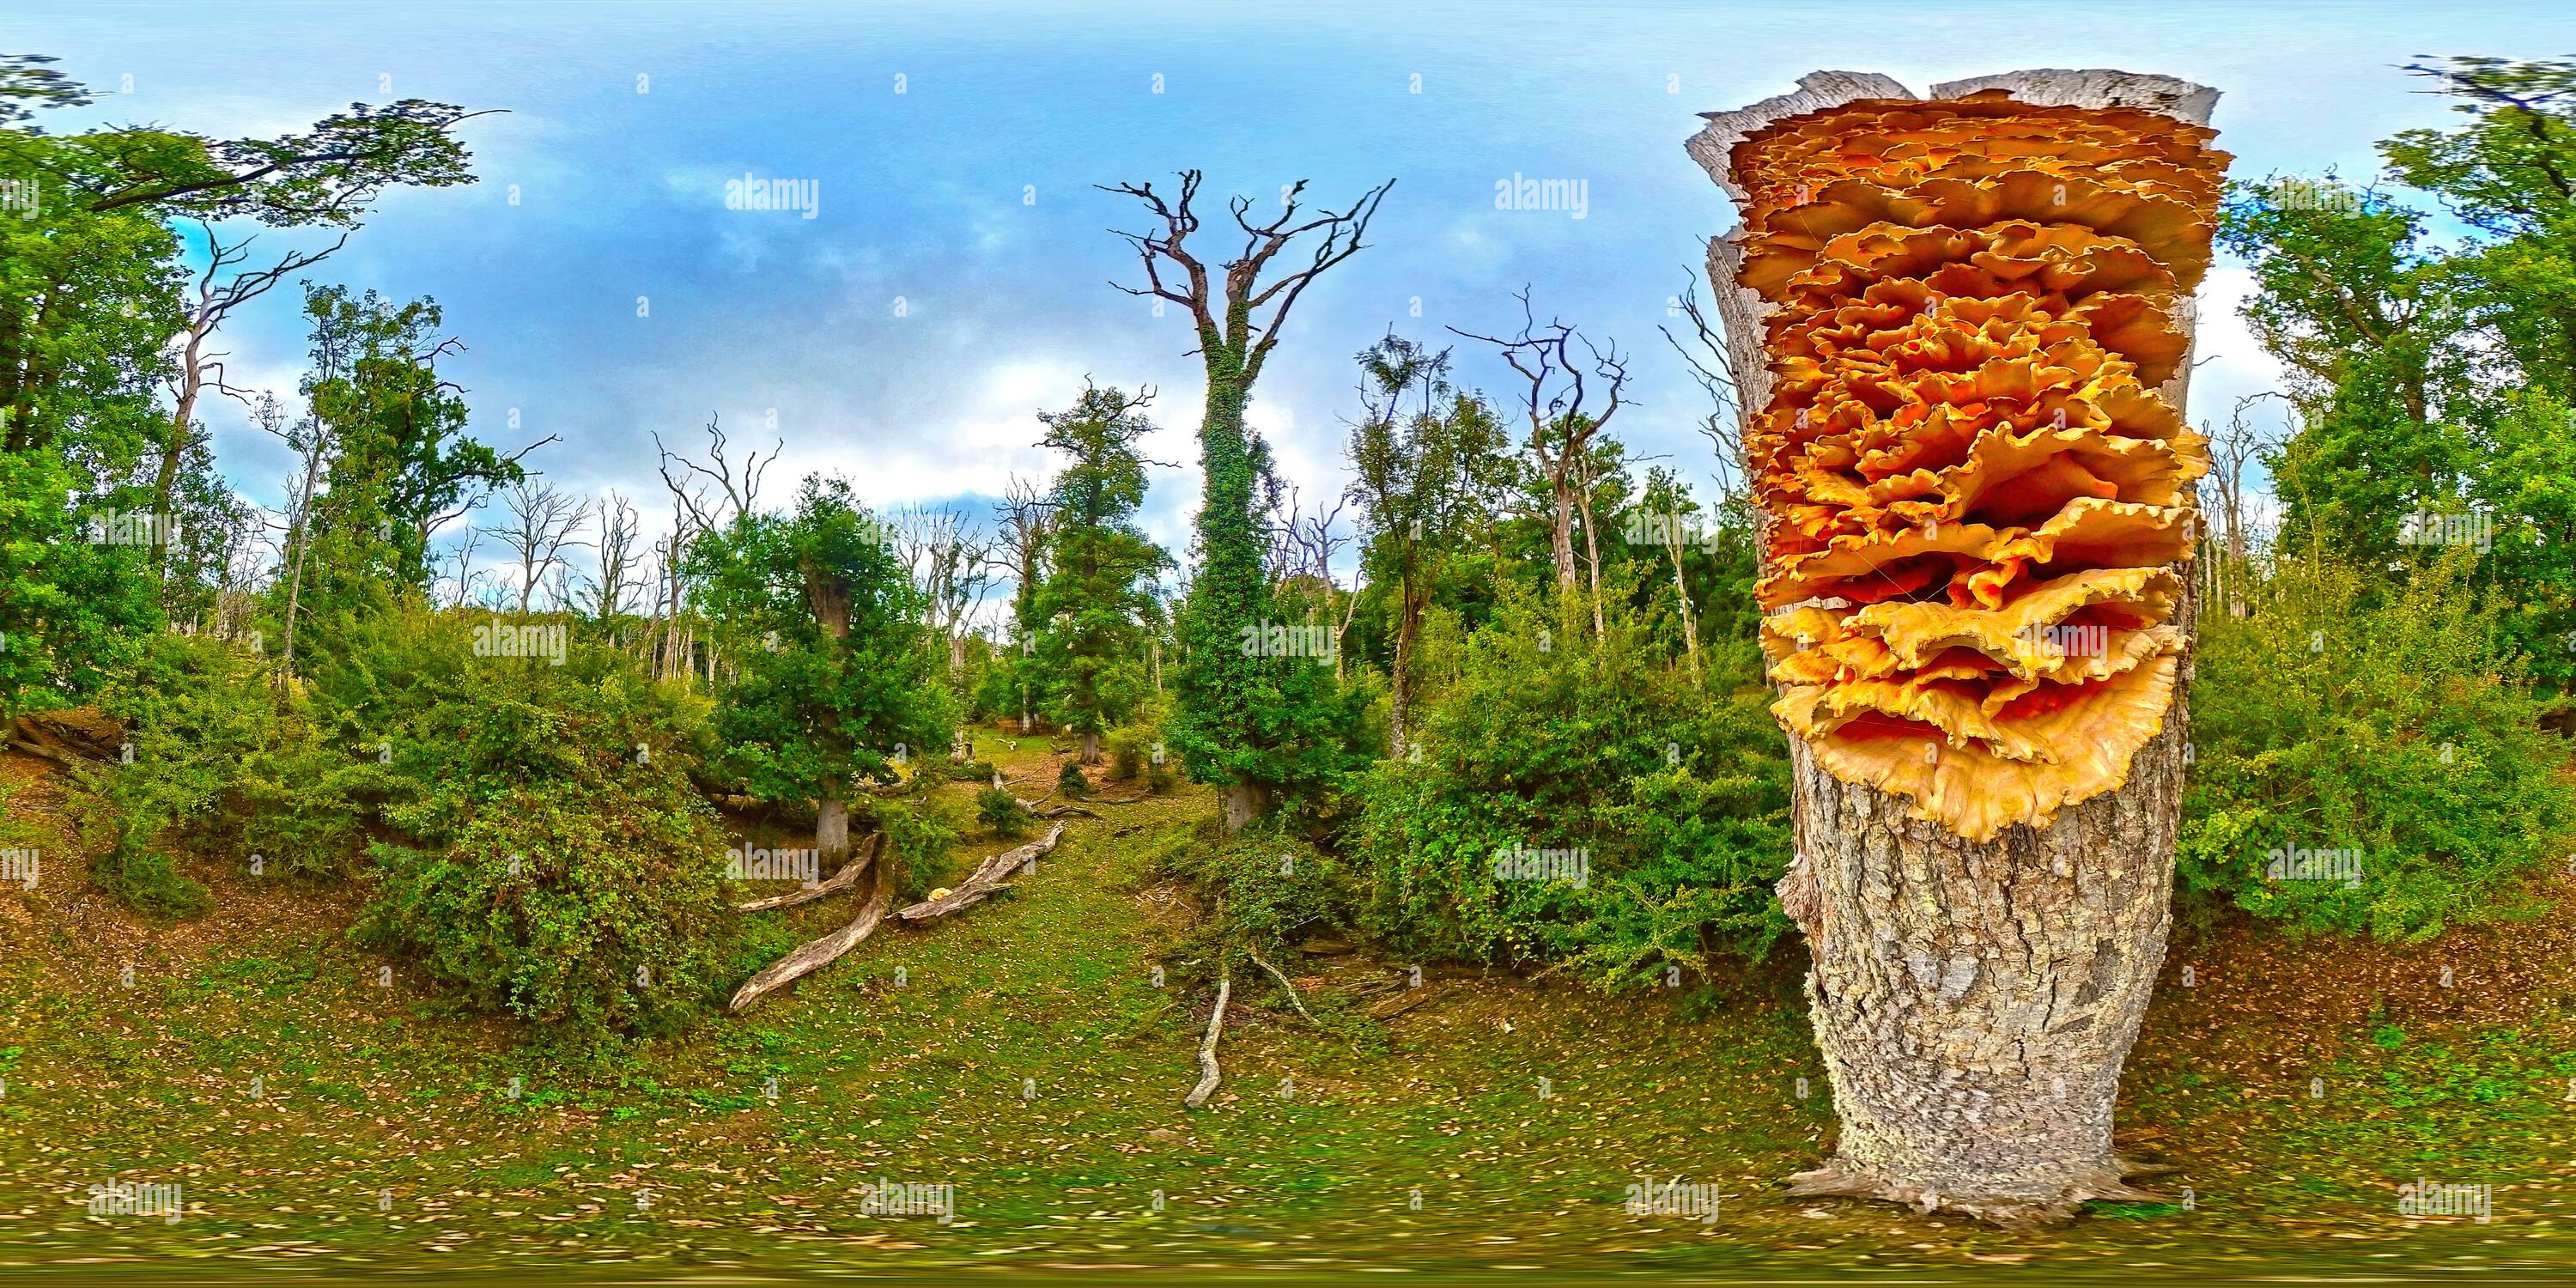 360 Grad Panorama Ansicht von Huhn des Waldes Pilze wachsen 3m hoch am Rande eines toten stehenden Eichenwaldes